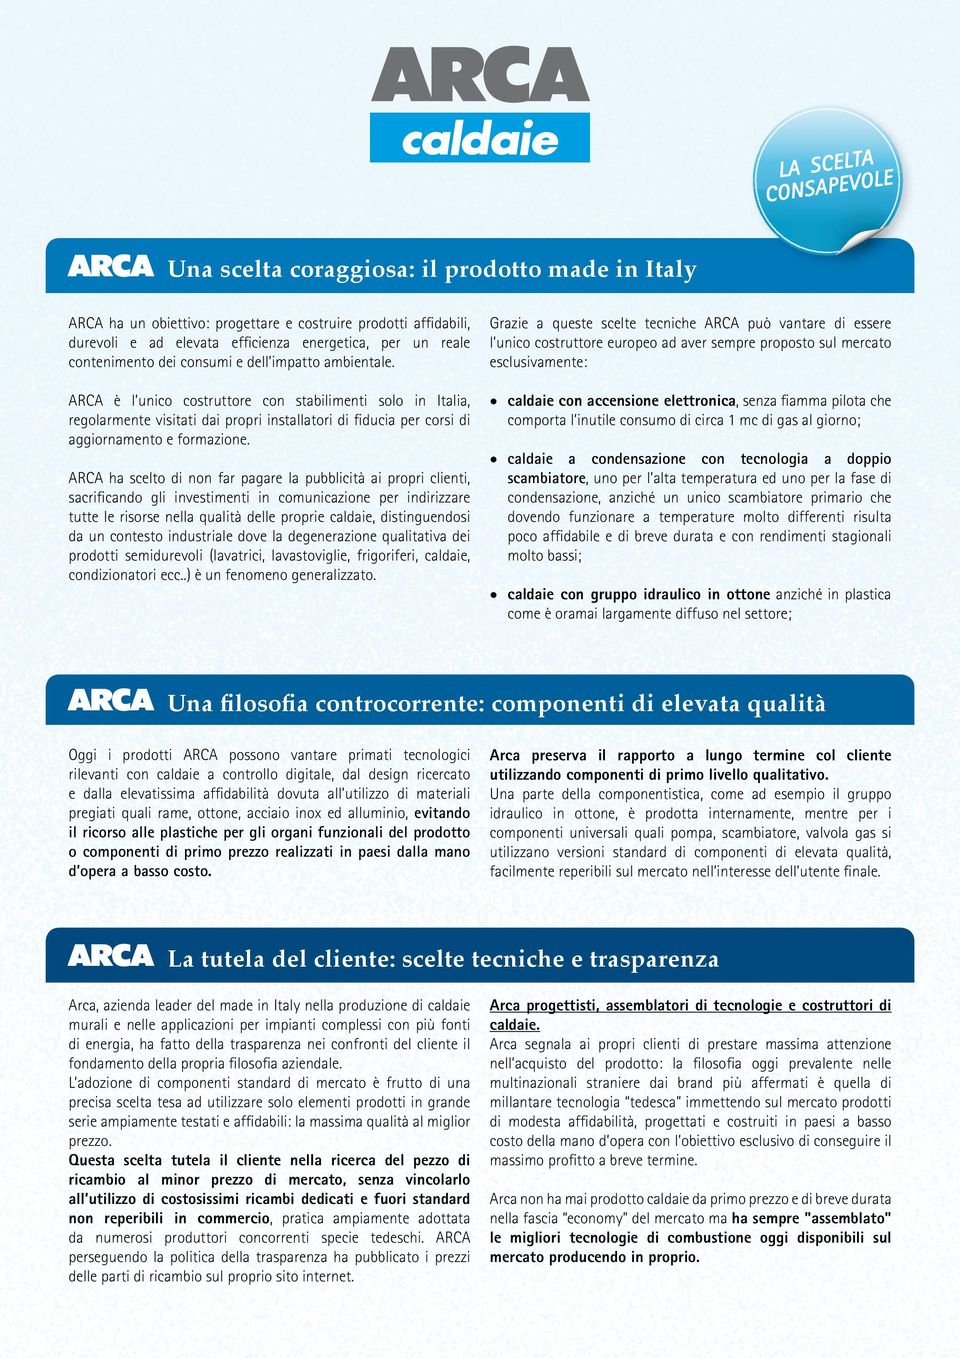 ARCA è l unico costruttore con stabilimenti solo in Italia, regolarmente visitati dai propri installatori di fiducia per corsi di aggiornamento e formazione.